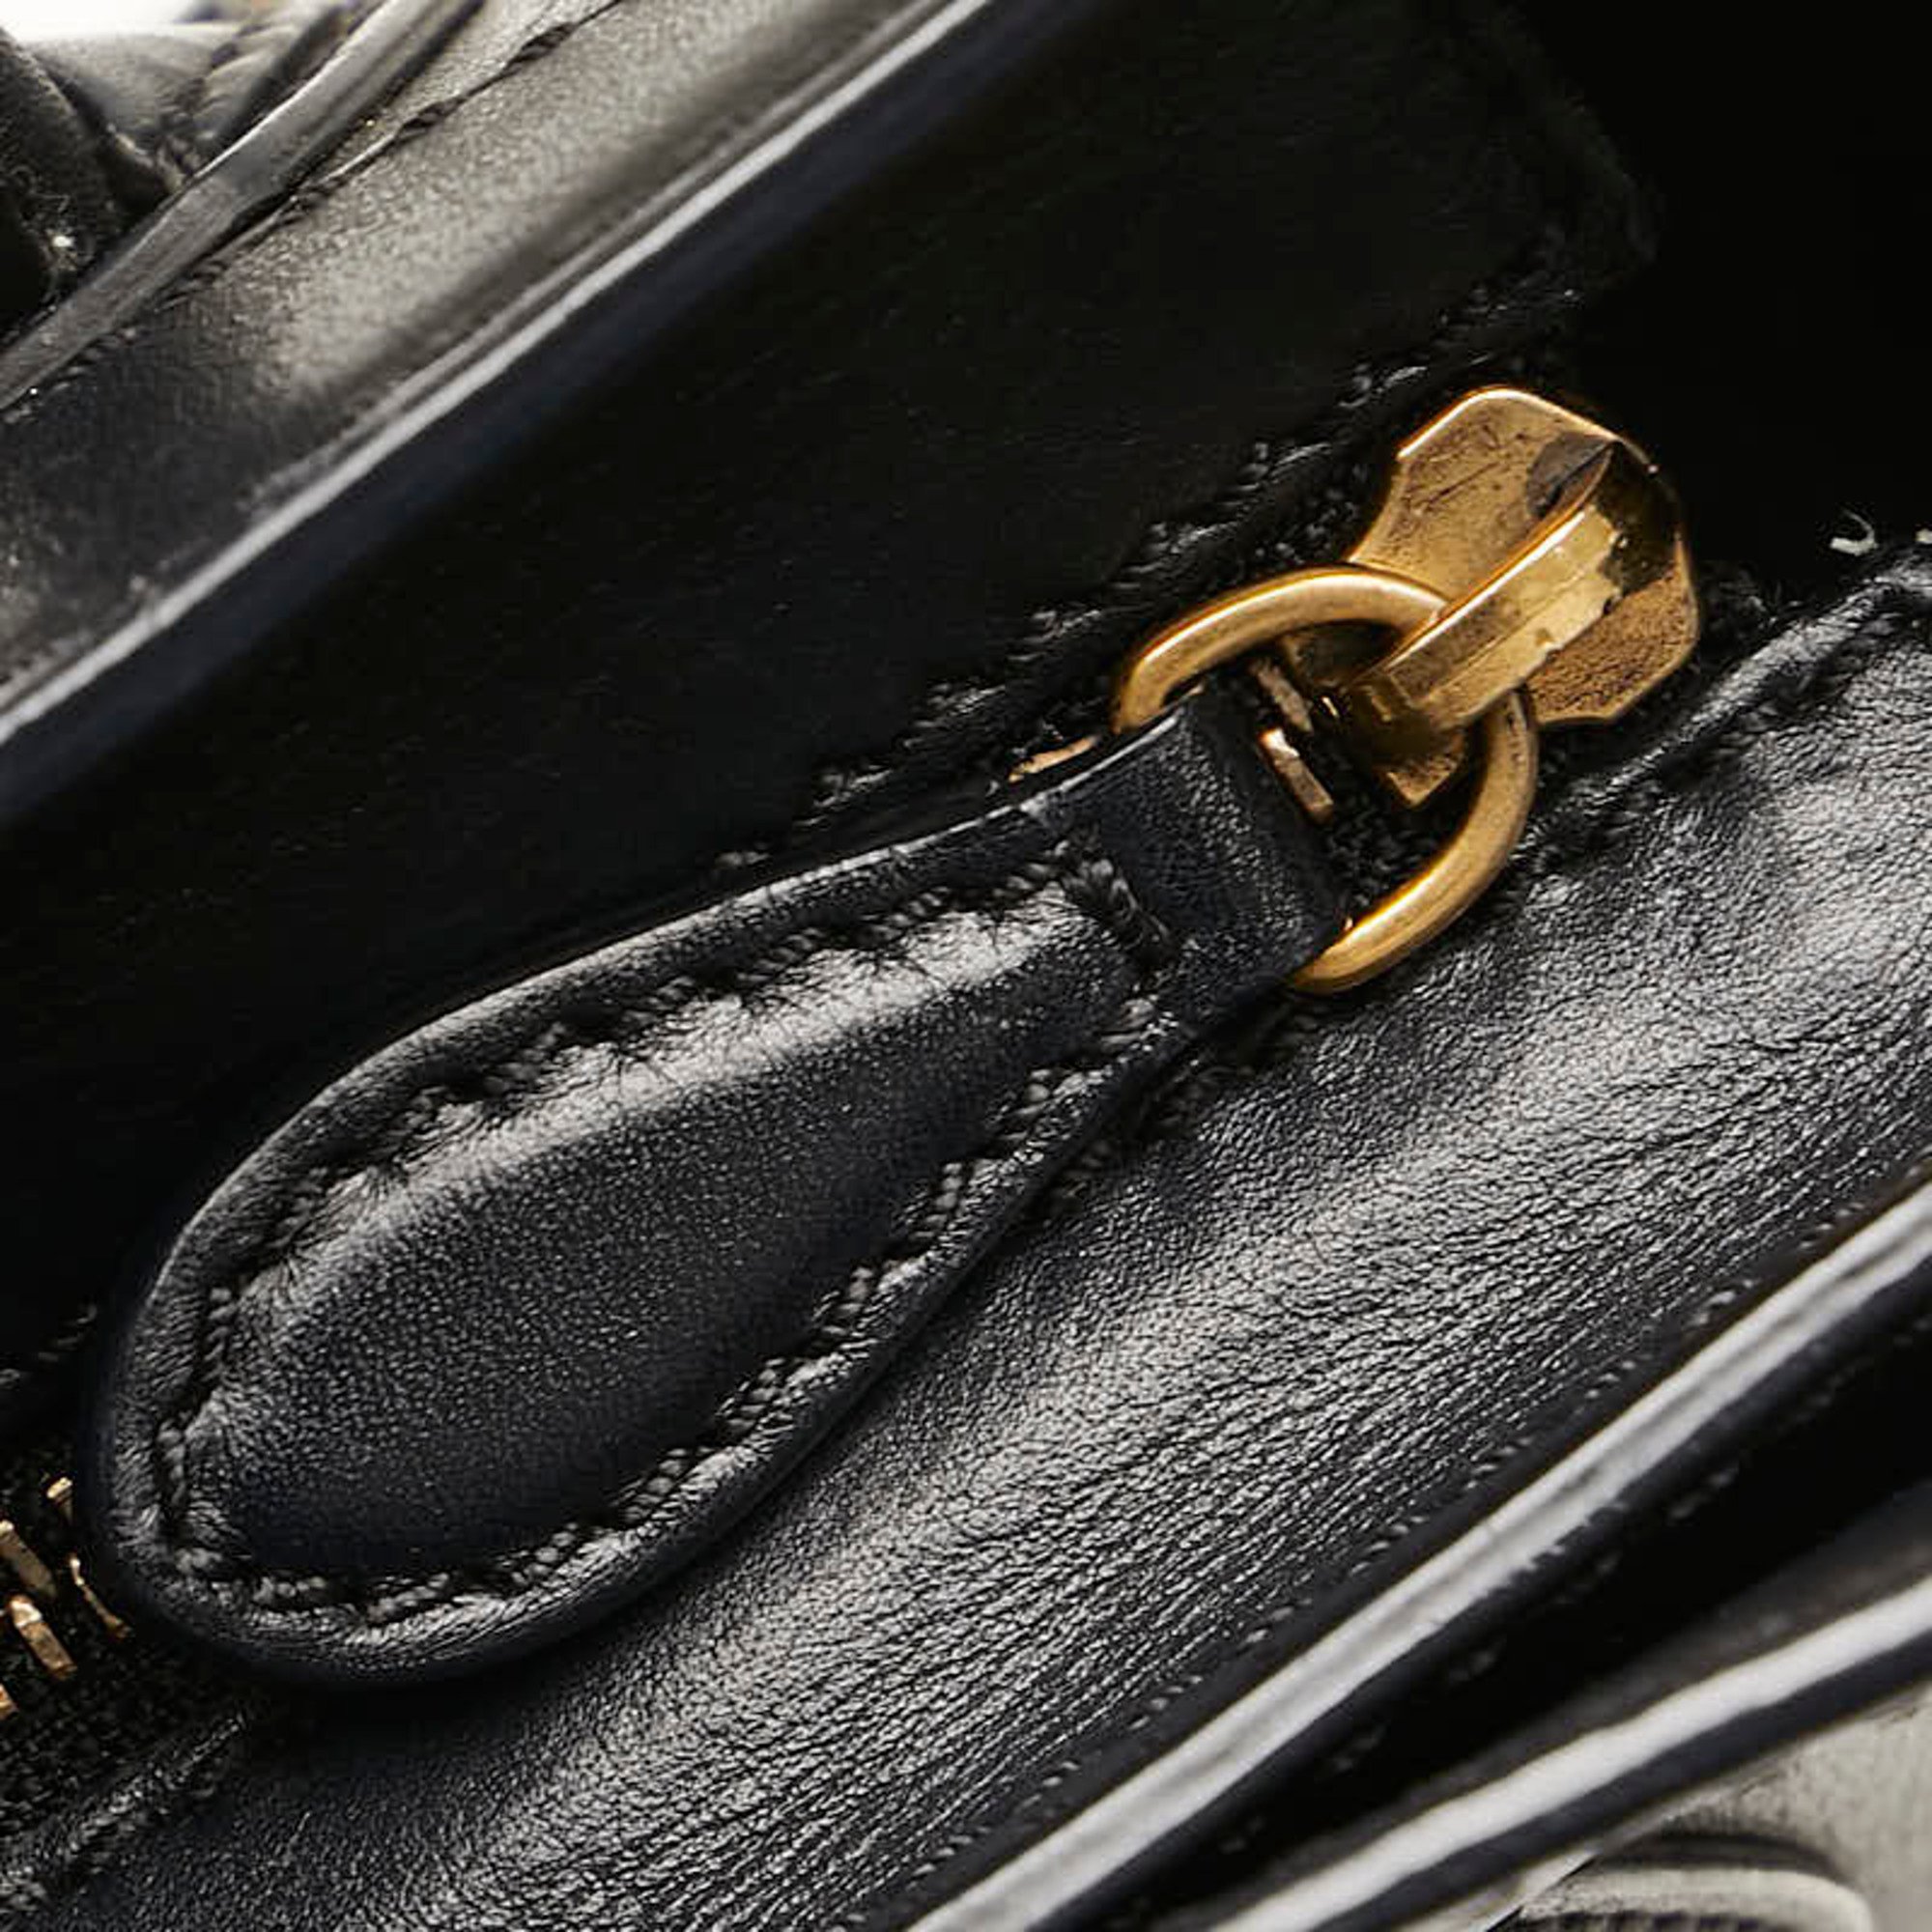 Celine Luggage Nano Shopper Handbag Shoulder Bag Black Leather Women's CELINE